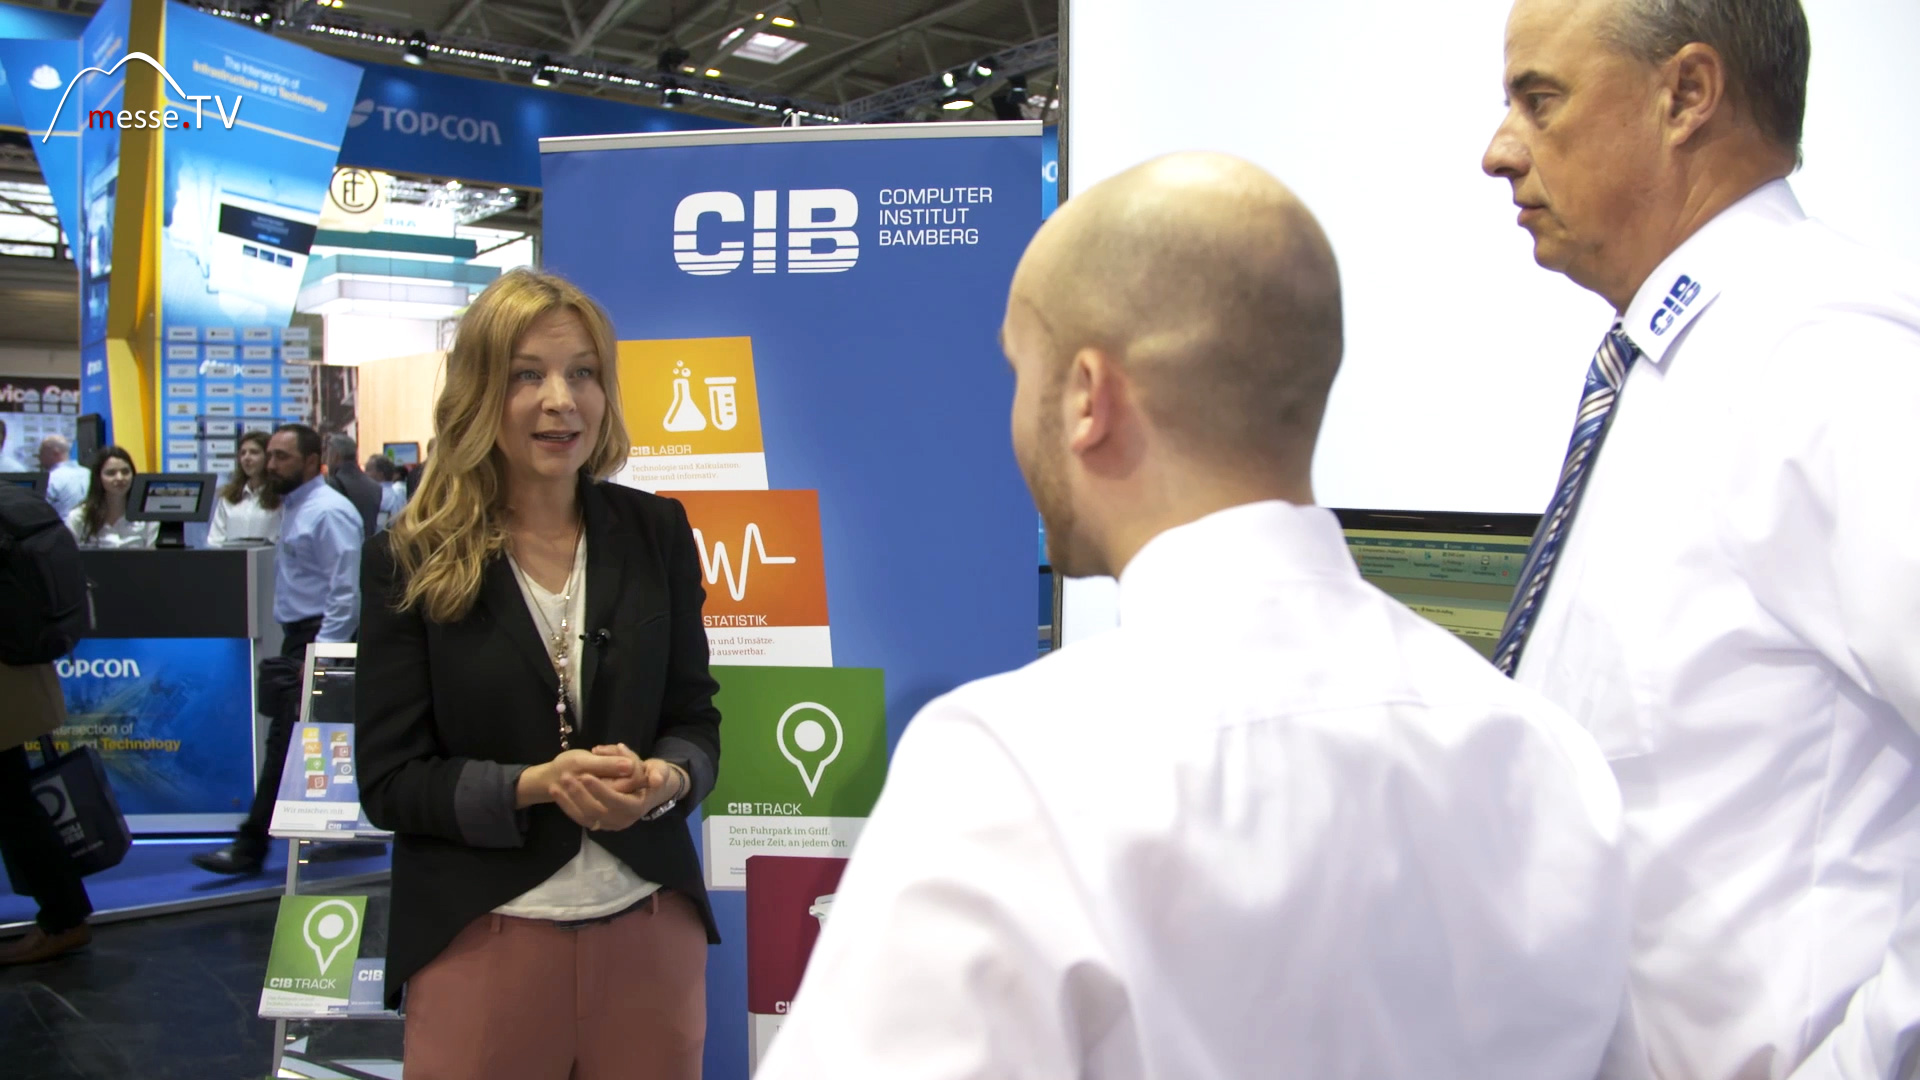 CIB mobile bauma 2019 trade fair Munich